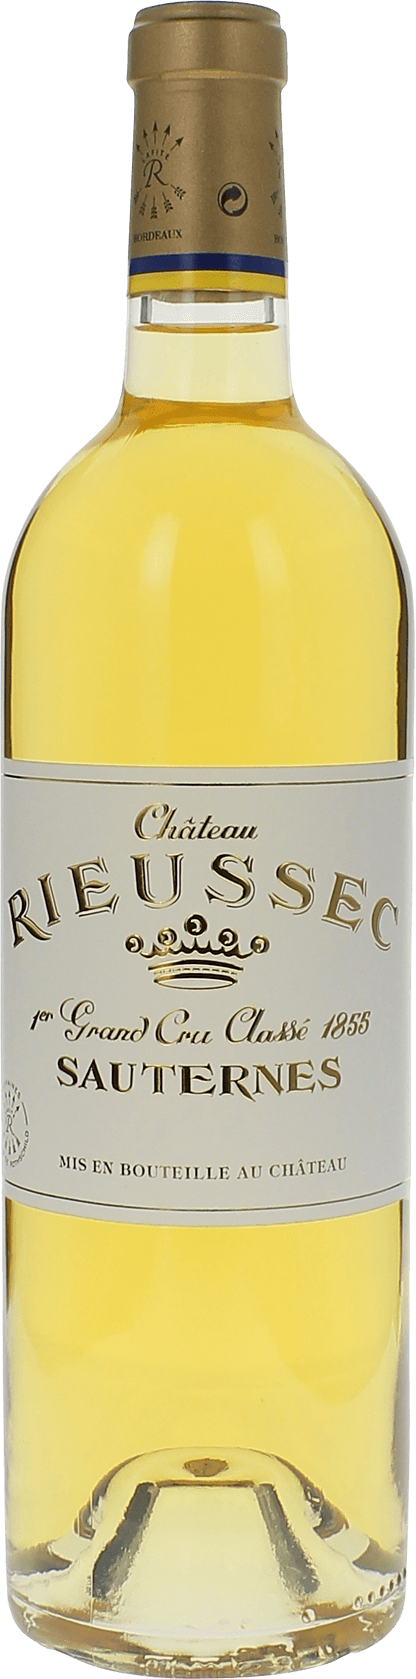 Rieussec 2003 1er cru Sauternes, Bordeaux blanc